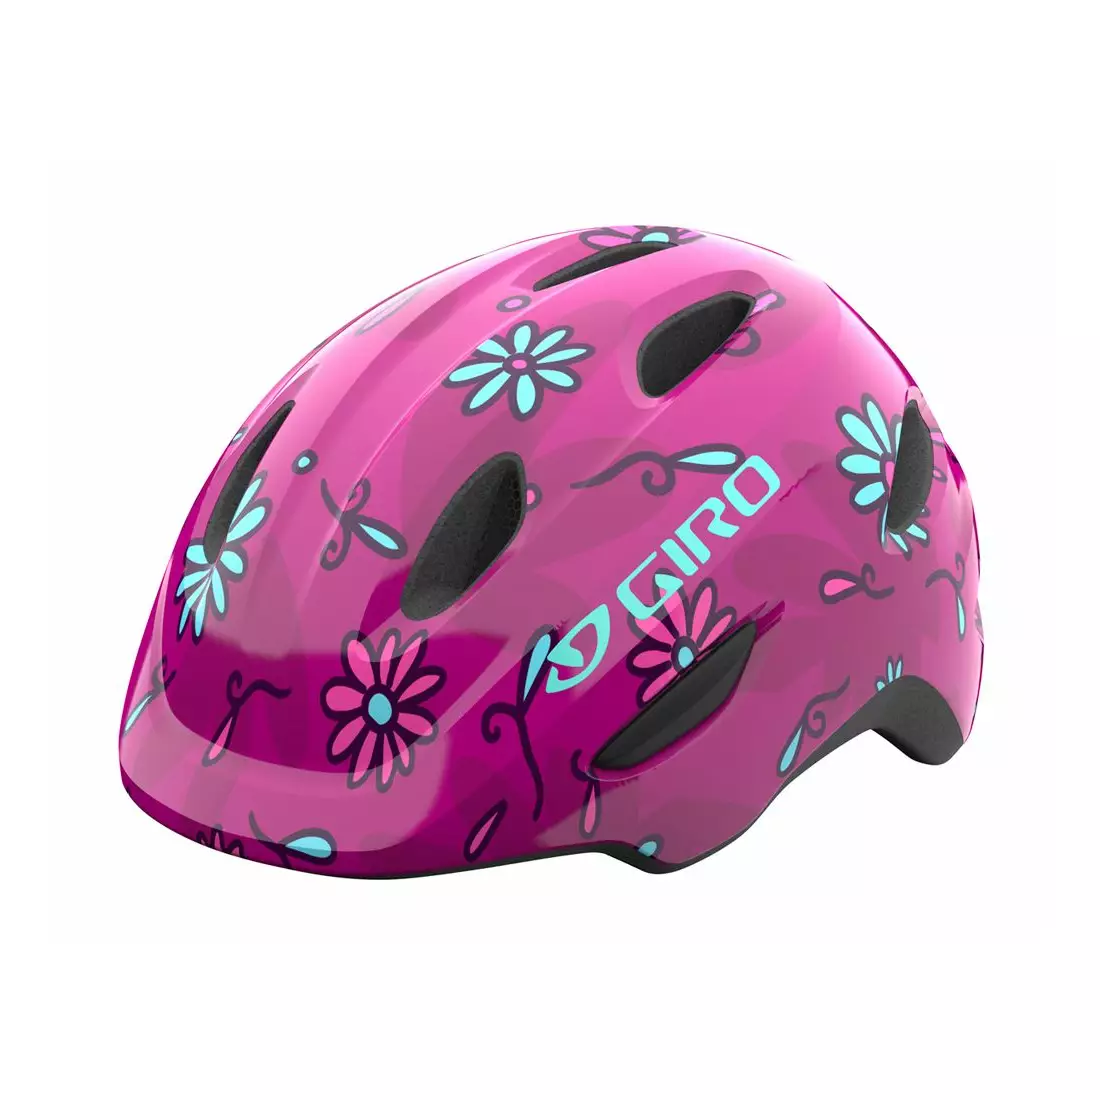 GIRO kask rowerowy dziecięcy/juniorski SCAMP pink street sugar daisies GR-7129847